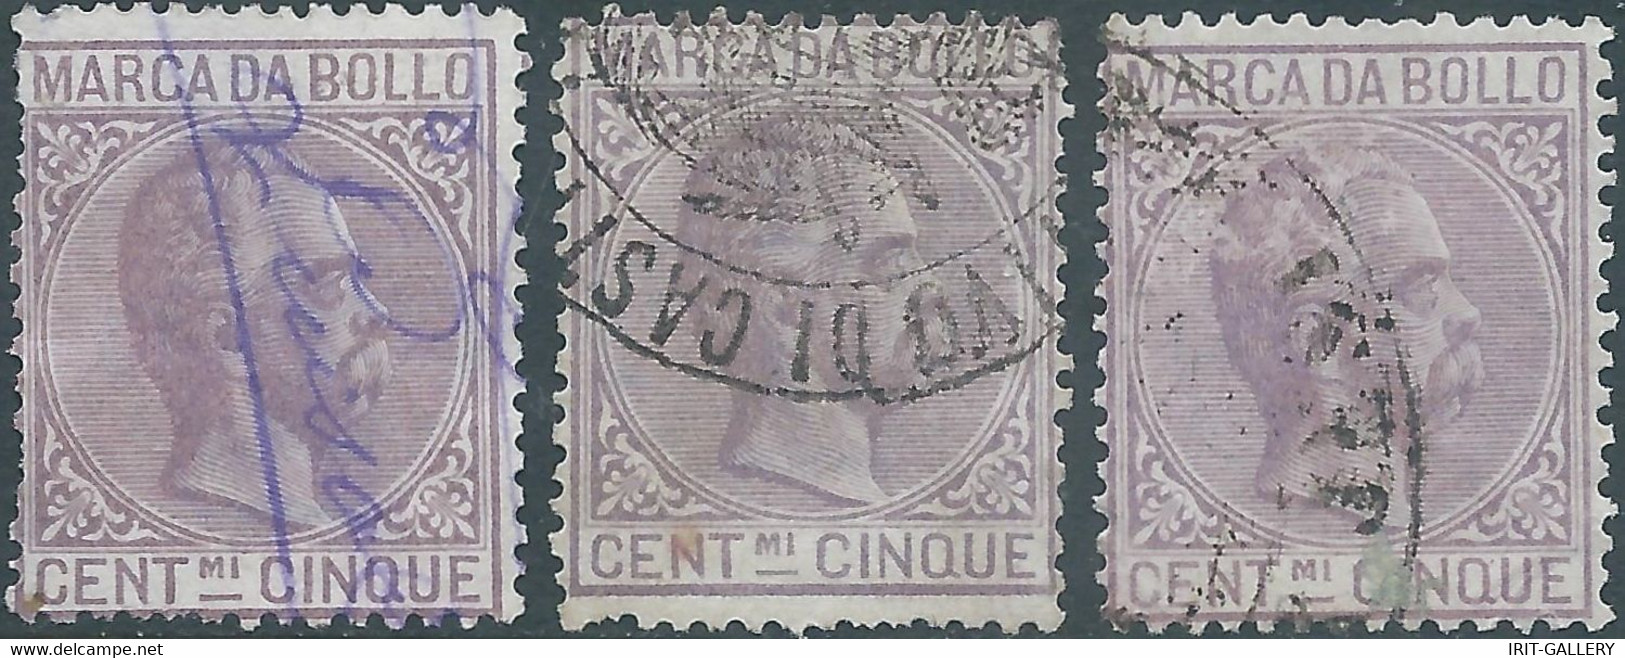 ITALIA-ITALY-ITALIEN,1882 Marca Da Bollo,Revenue Fiscal -Tax,3x 5Cent,Used - Fiscaux